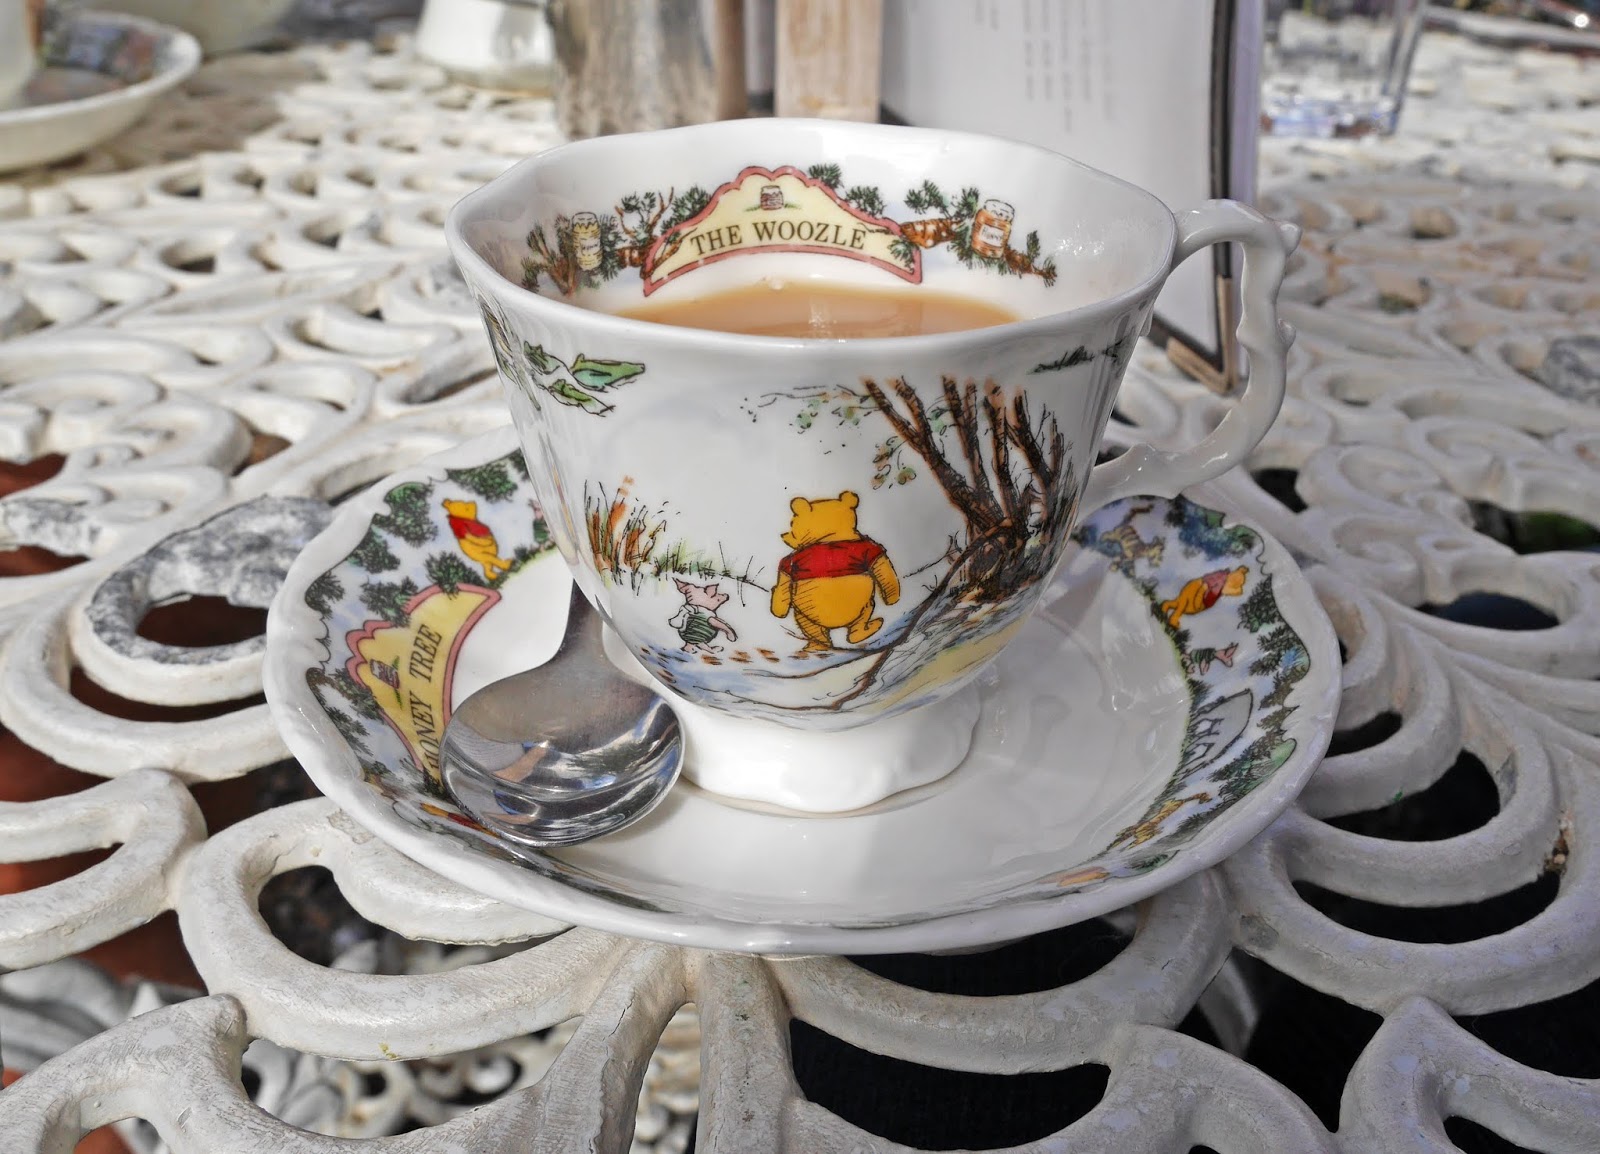 Drinking tea at Piglet's Tearoom in Hartfield